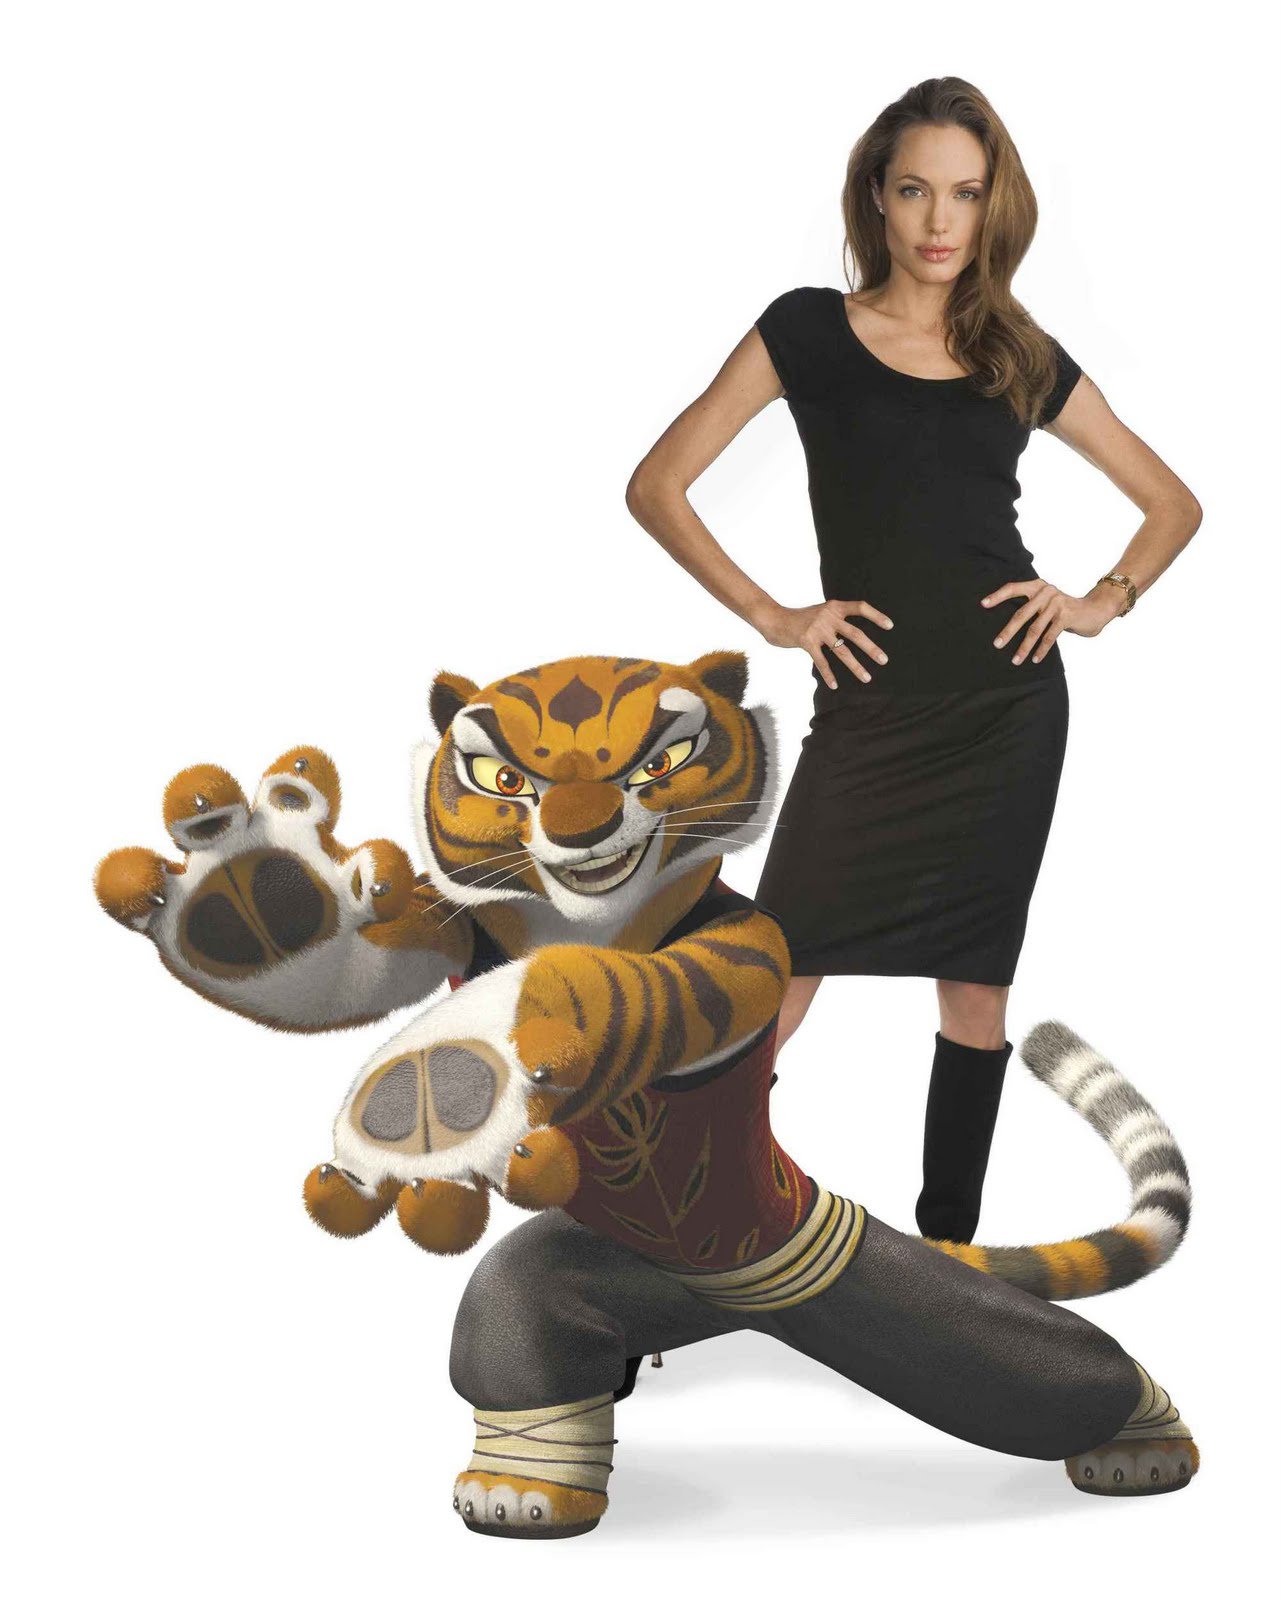 Kung Fu Panda 2 Hot Actress Tigress Angelina Jolie [6 Photos] Aku